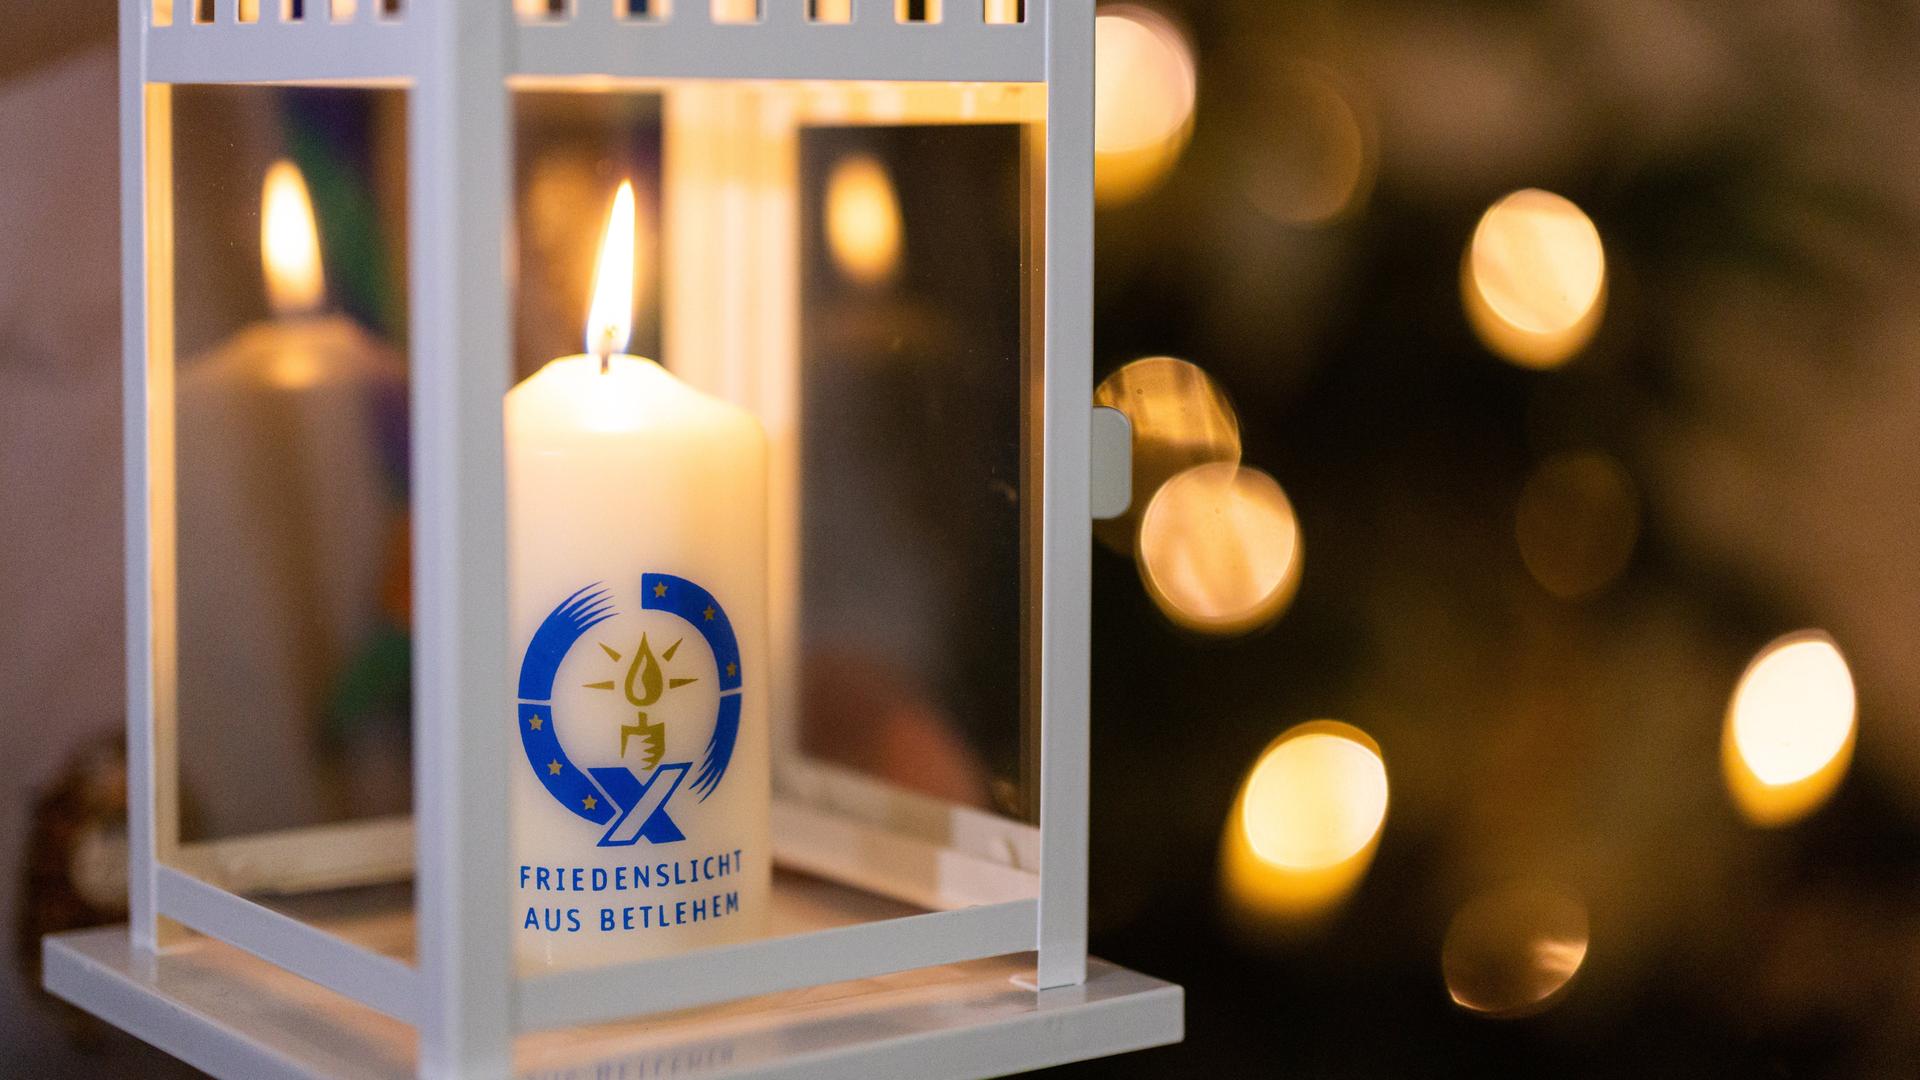 Eine Kerze mit der Aufschrift "Friedenslicht aus Bethlehem" brennt in einem Windlichtgehäuse.